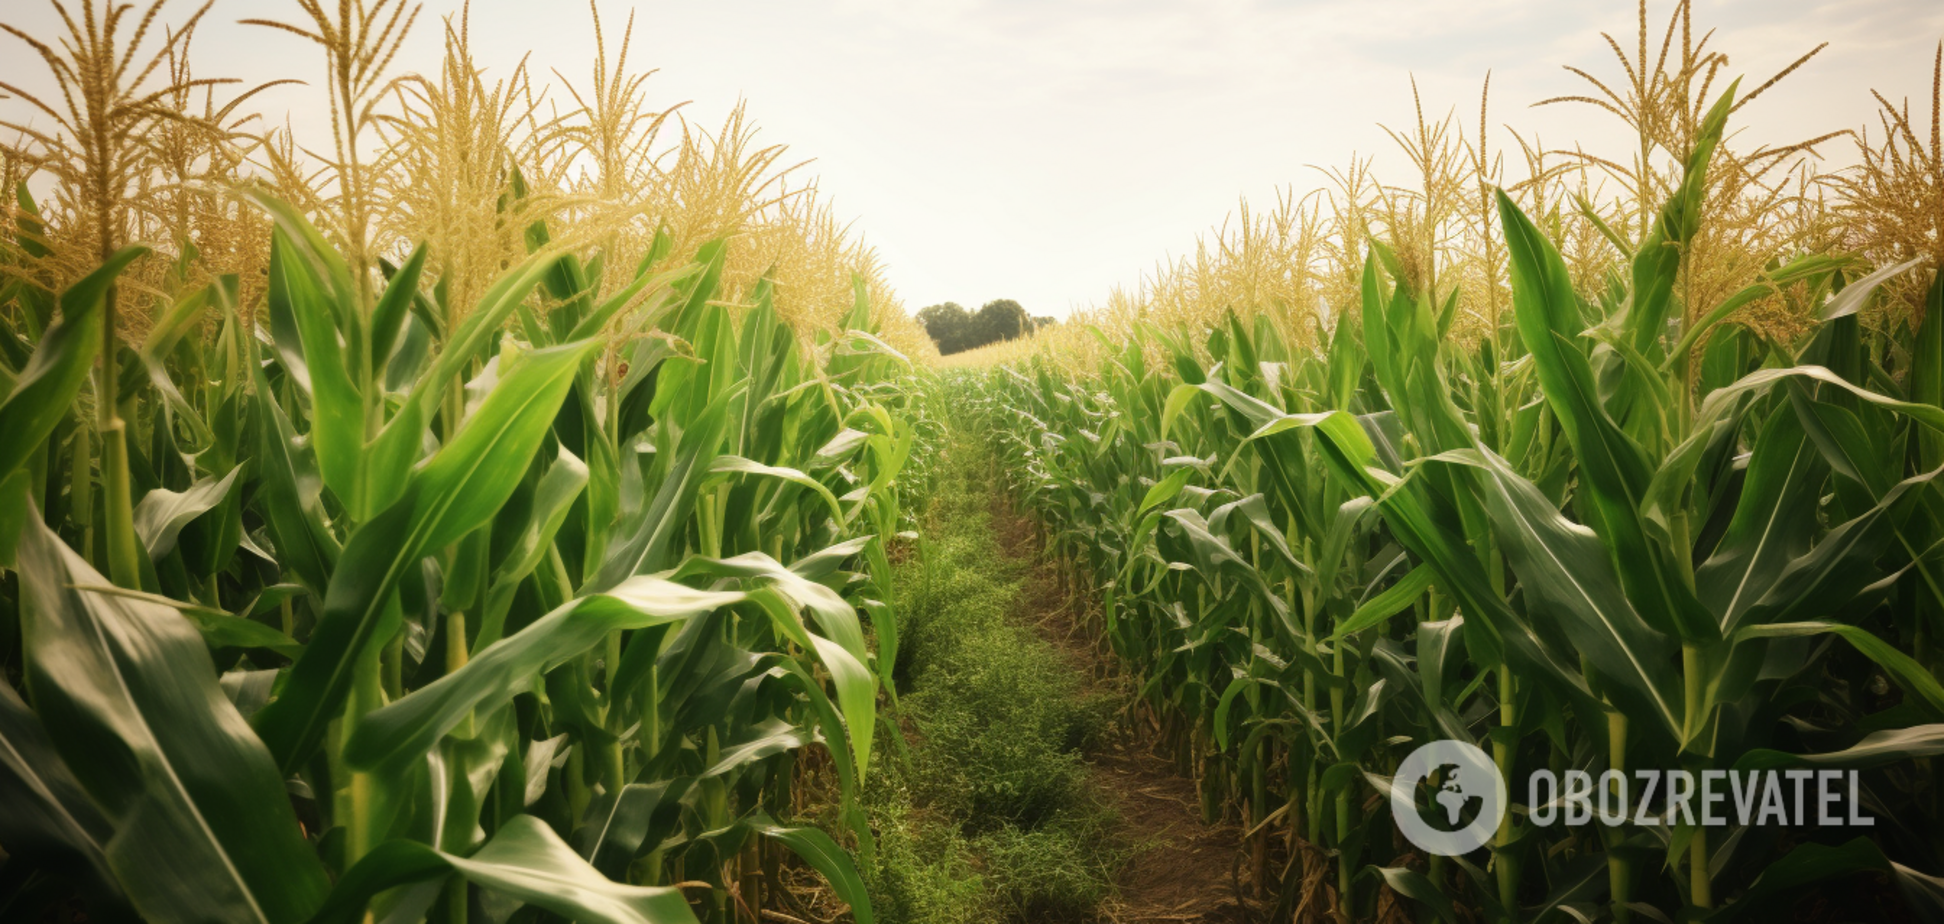 Как защитить кукурузу от вредителей: в сети показали изобретательный метод